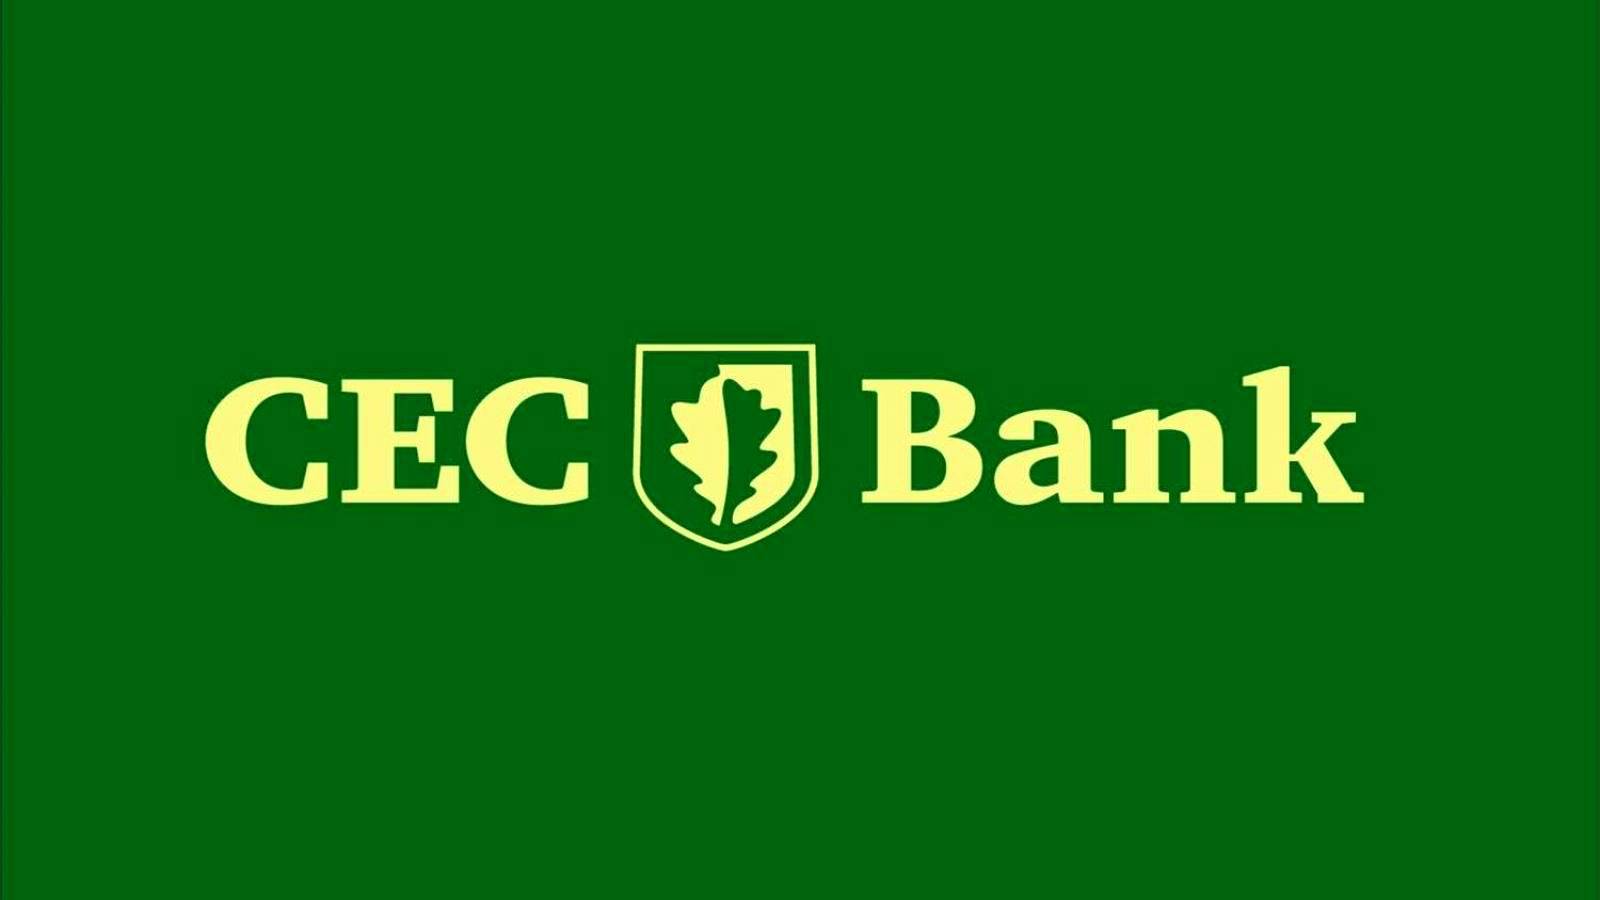 Kennisgeving van belangrijke maatregel van CEC Bank officieel bevestigd aan alle klanten